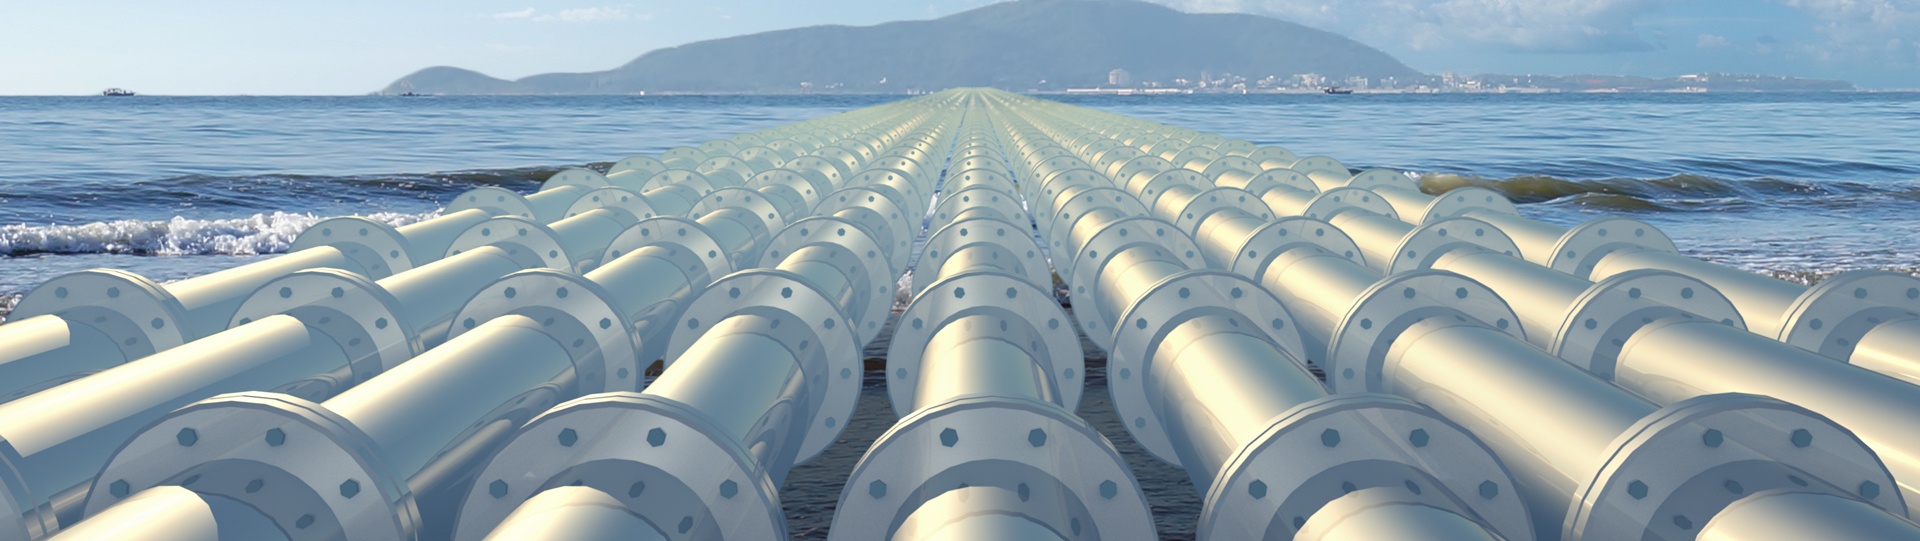 pipelines near ocean